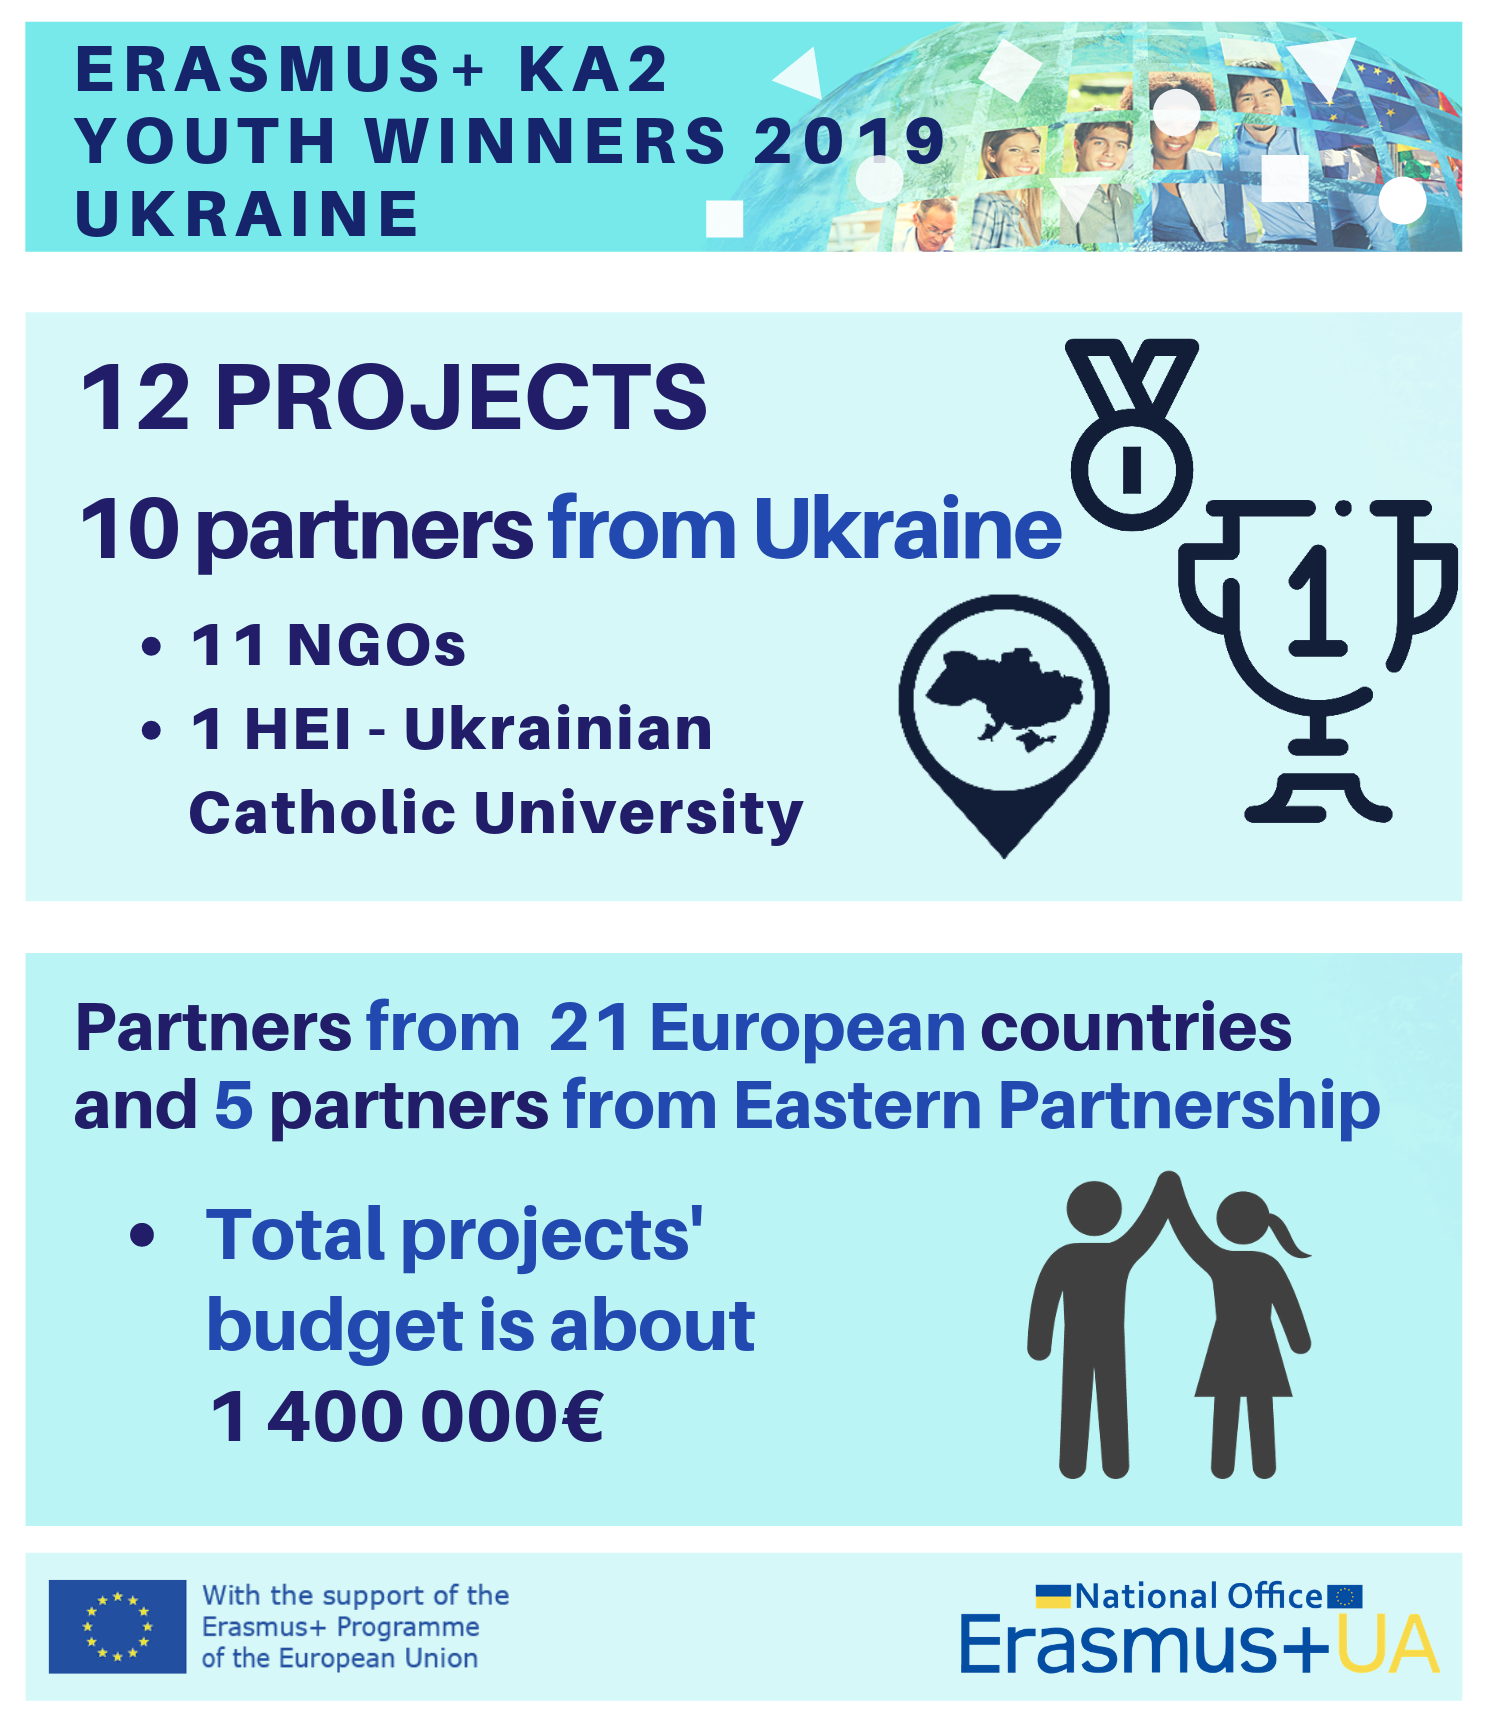 National Erasmus+ Office in Ukraine